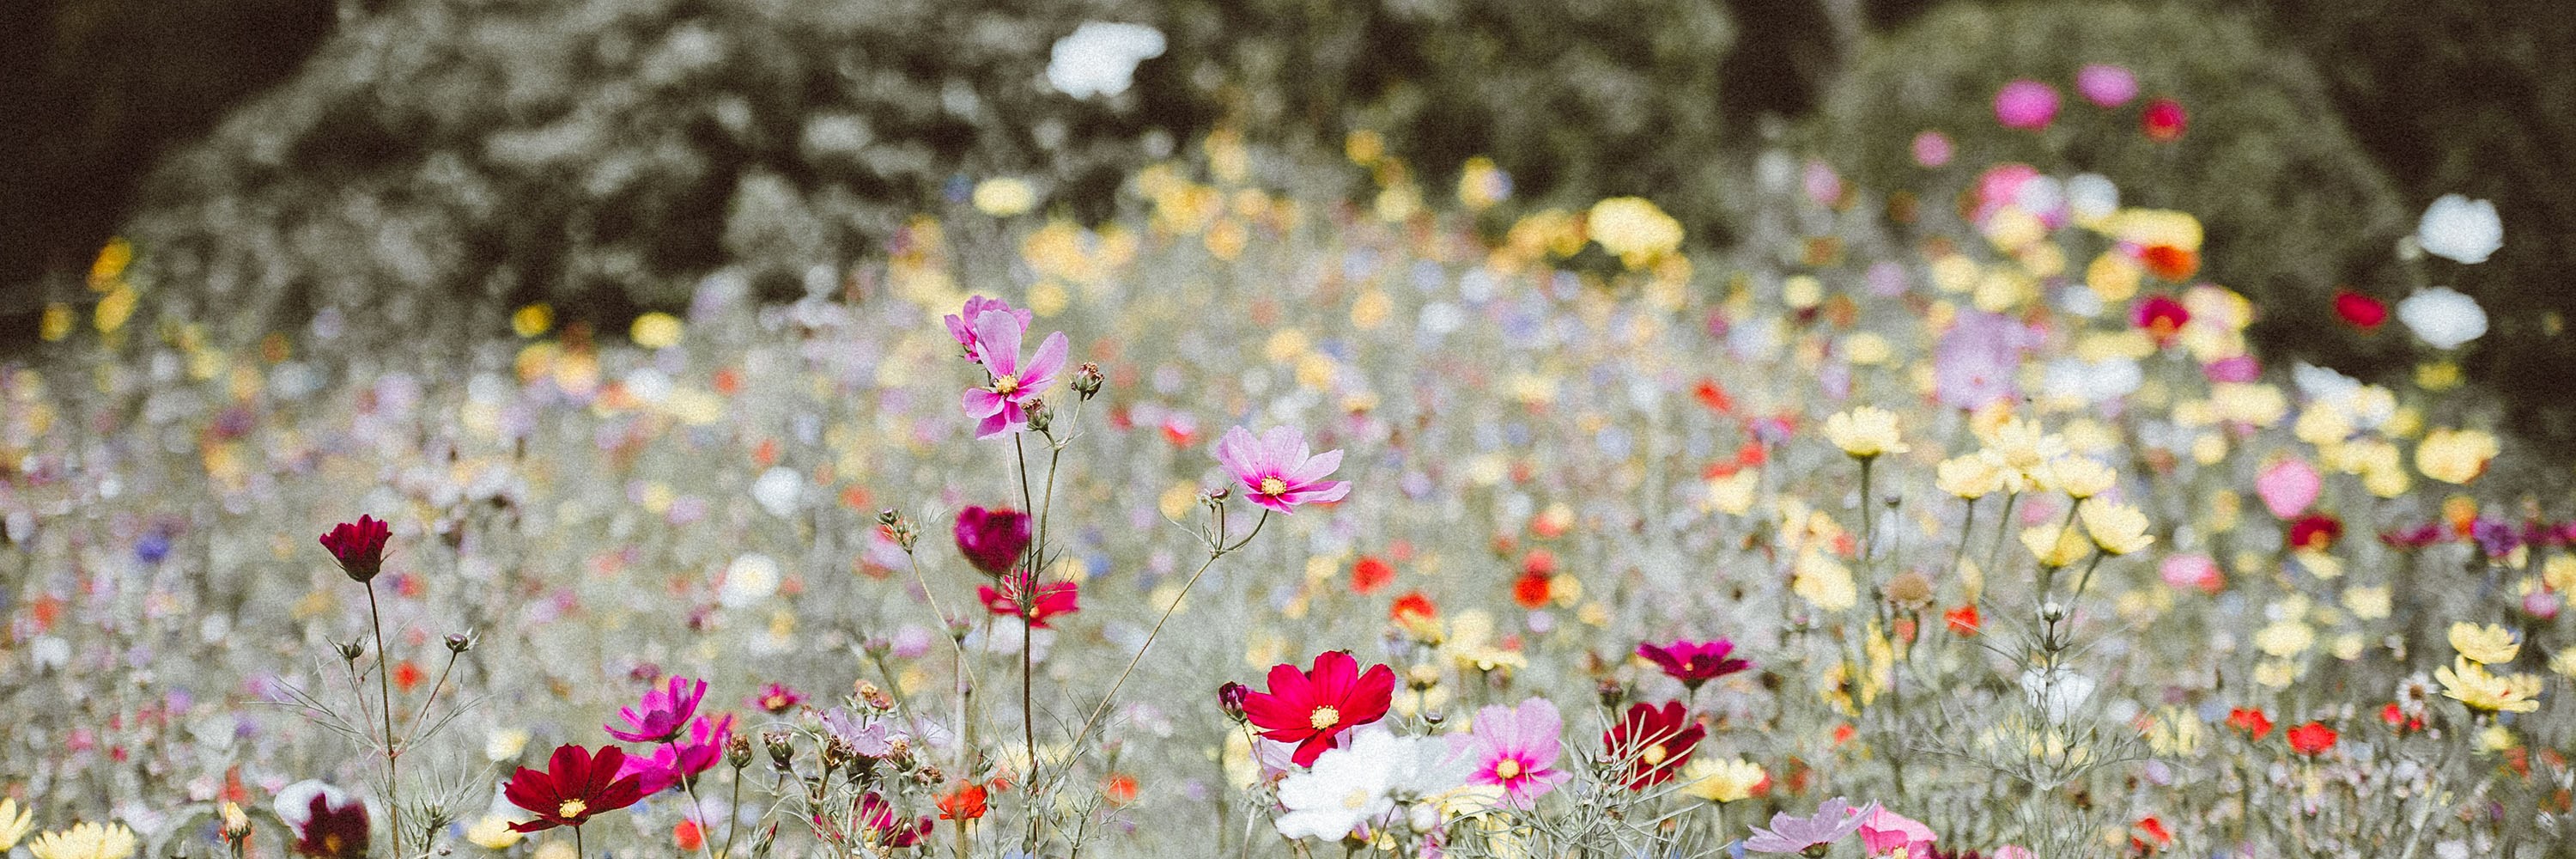 Summer flowers. Photo: Annie Spratt/Unsplash.com